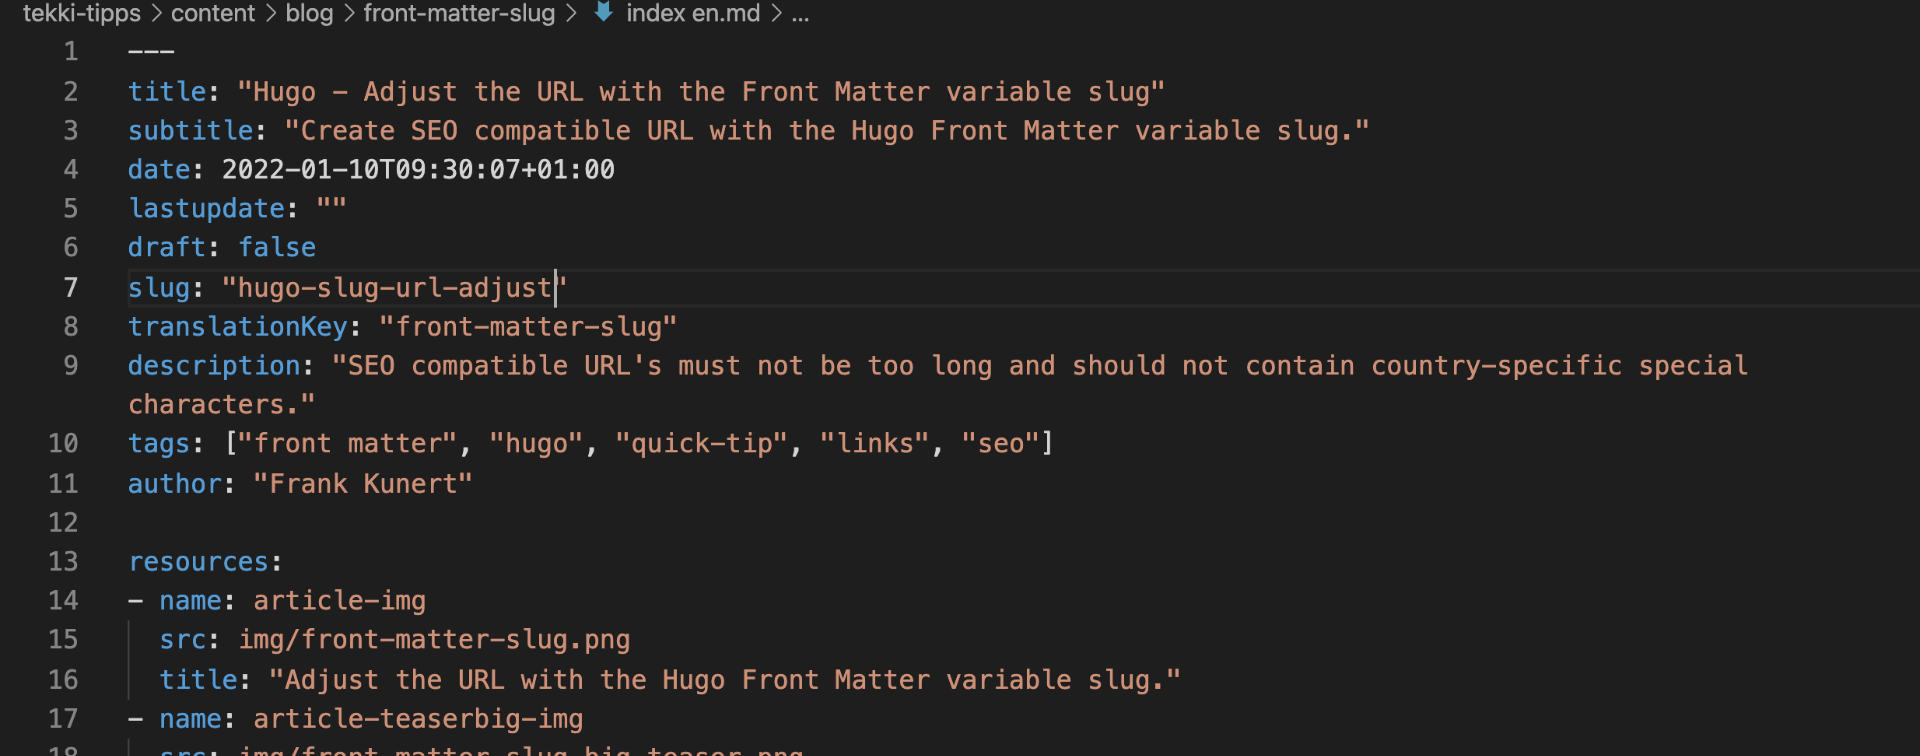 Adjust the URL with the Hugo Front Matter variable slug.